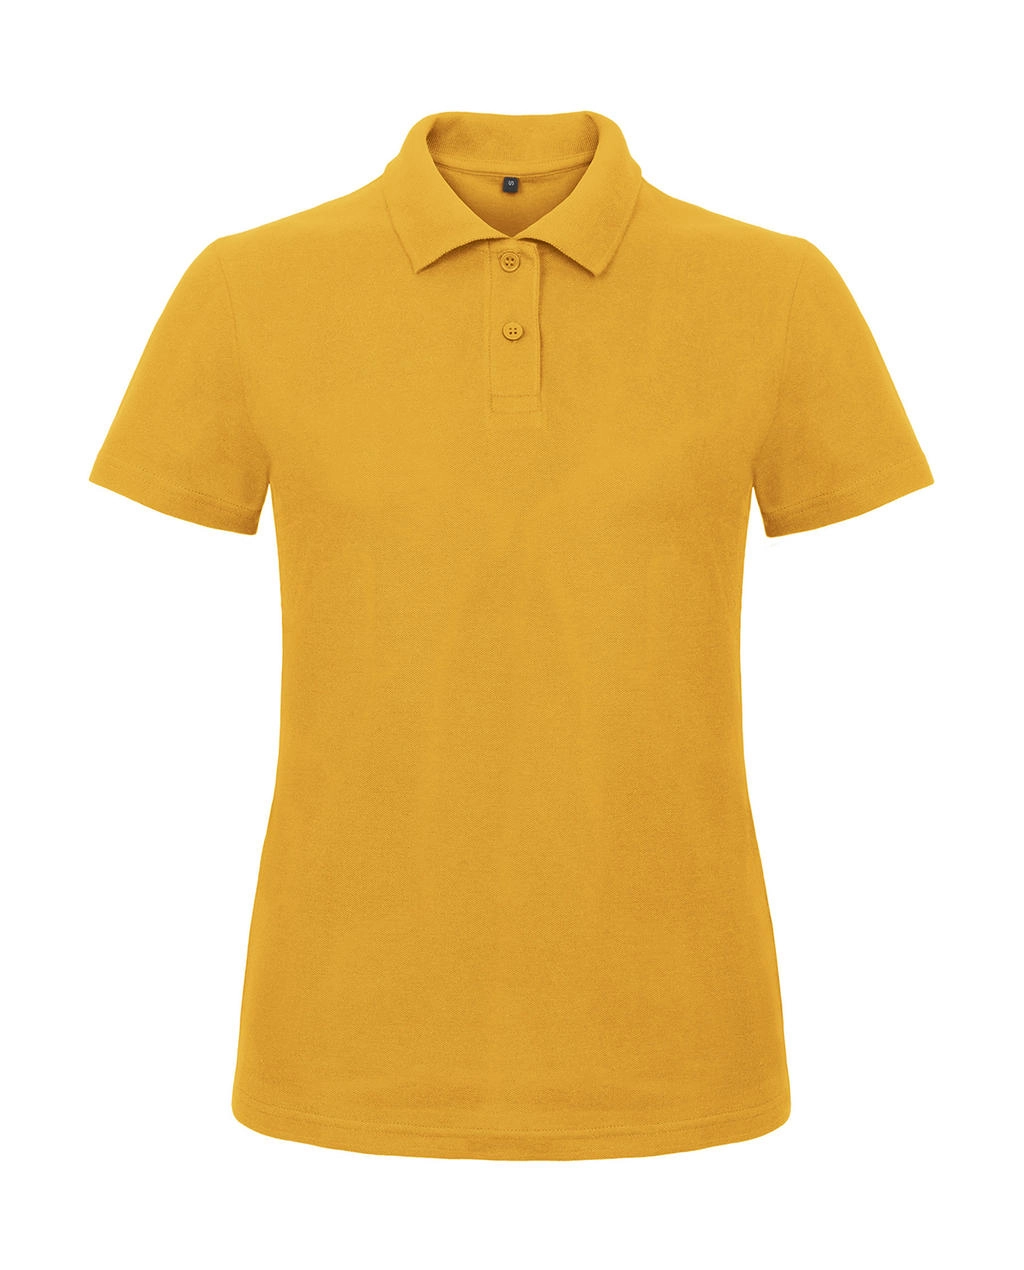 ID.001/women Piqué Polo Shirt zum Besticken und Bedrucken in der Farbe Chili Gold mit Ihren Logo, Schriftzug oder Motiv.